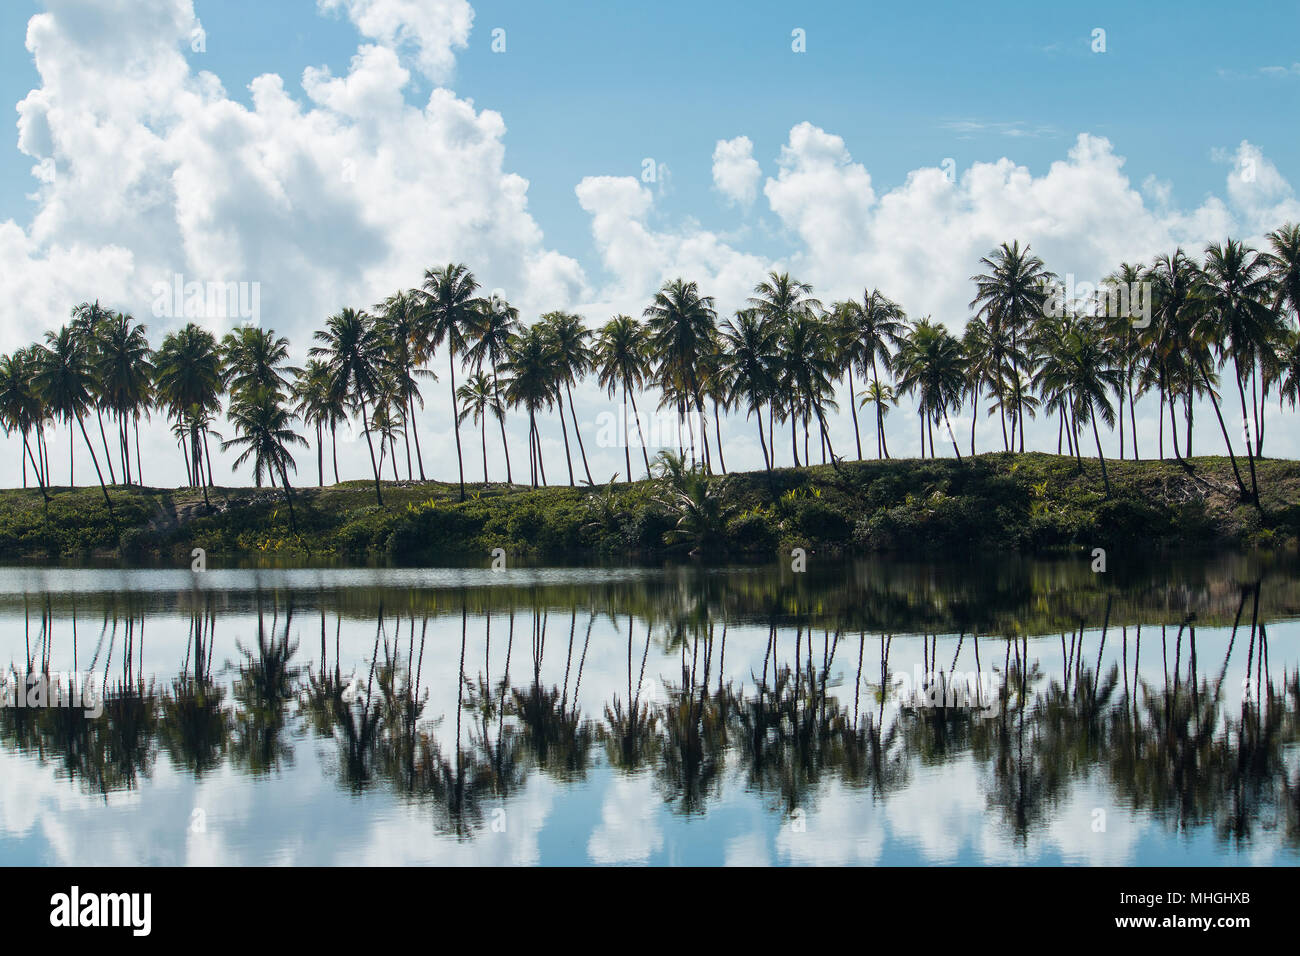 Cocotiers avec réflexion dans le miroir d'eau du lac. Paysage tropical. Banque D'Images